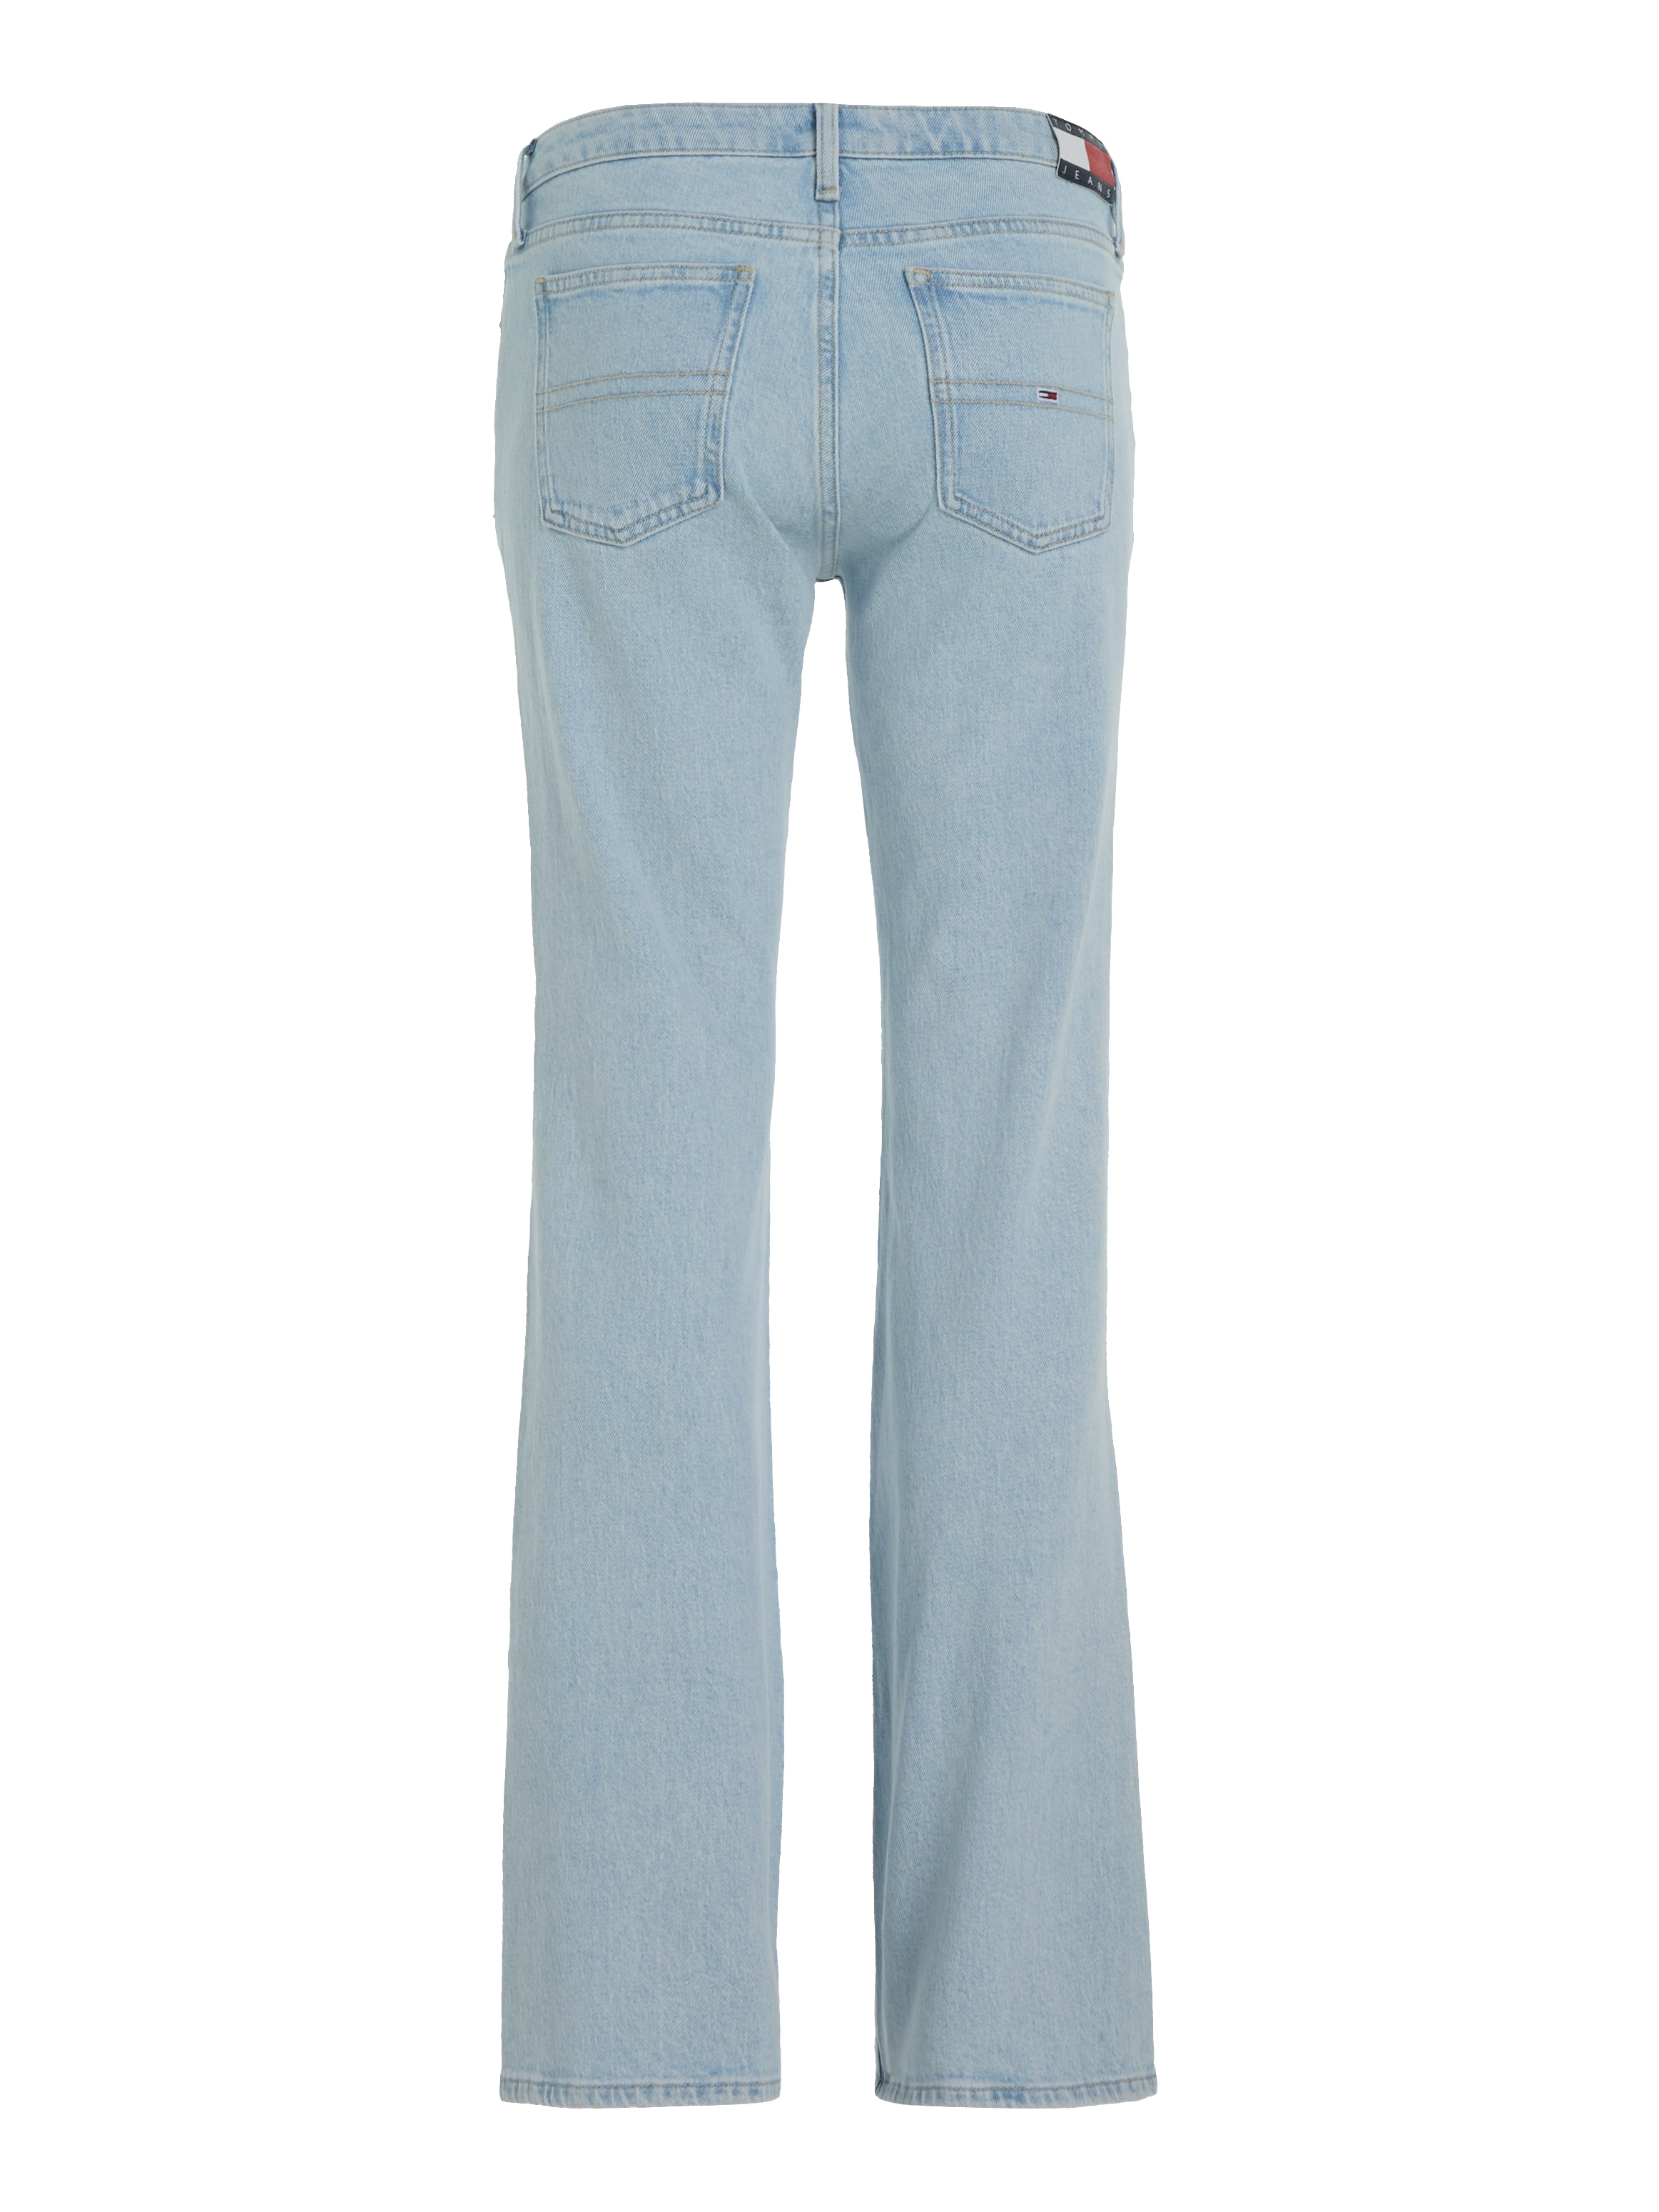 Tommy Jeans Bequeme Jeans, mit Ledermarkenlabel